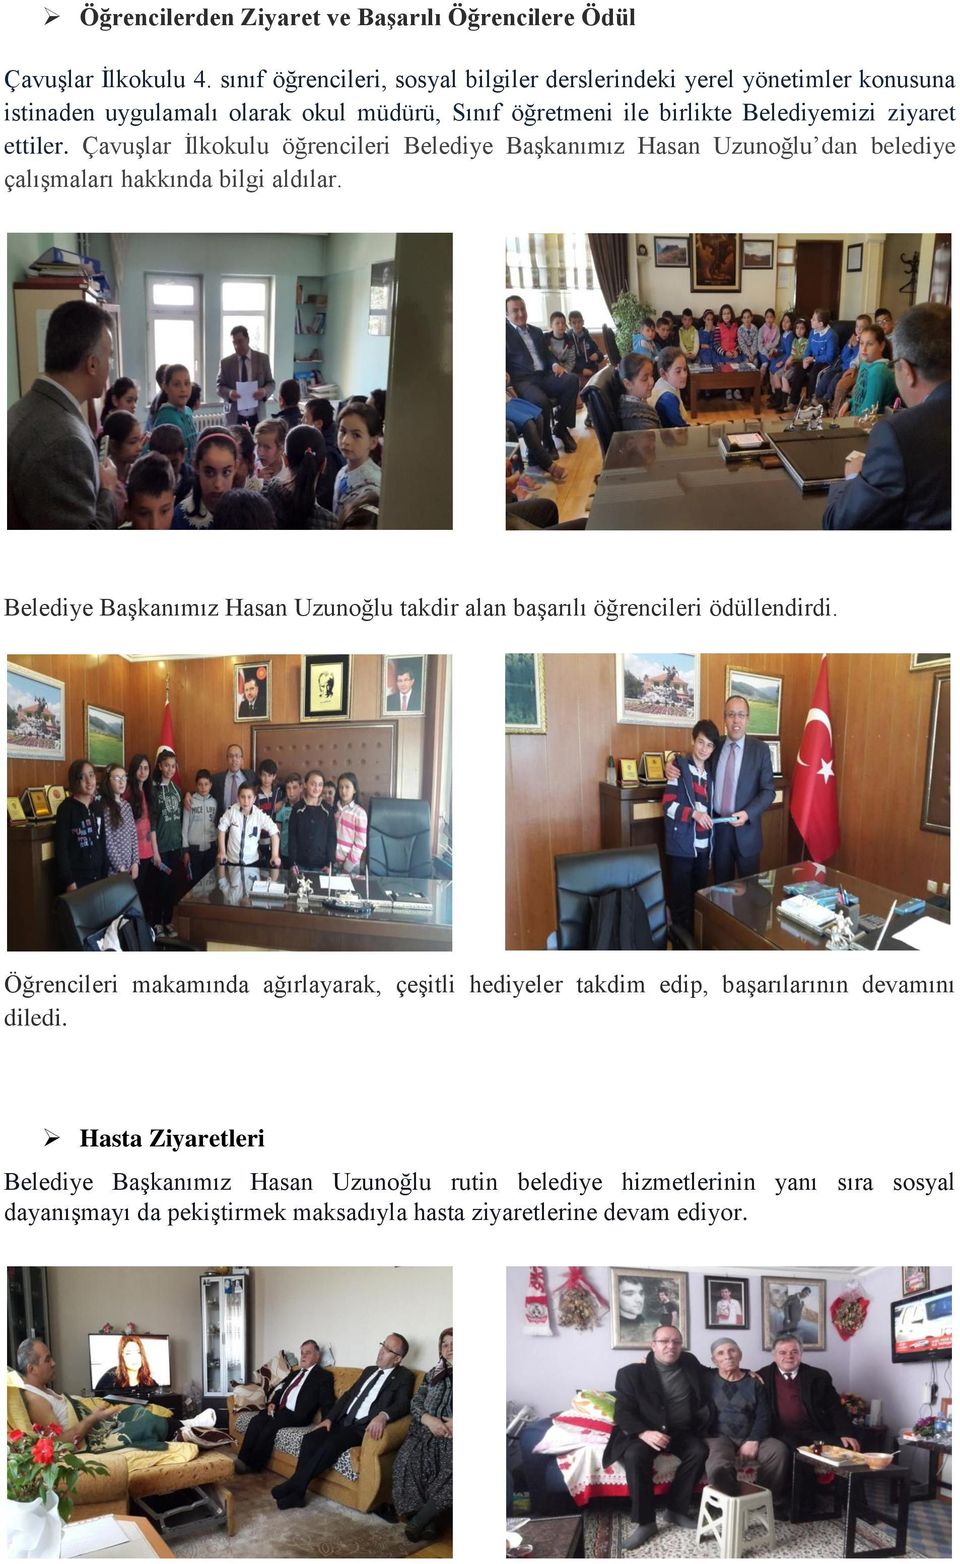 Çavuşlar İlkokulu öğrencileri Belediye Başkanımız Hasan Uzunoğlu dan belediye çalışmaları hakkında bilgi aldılar.